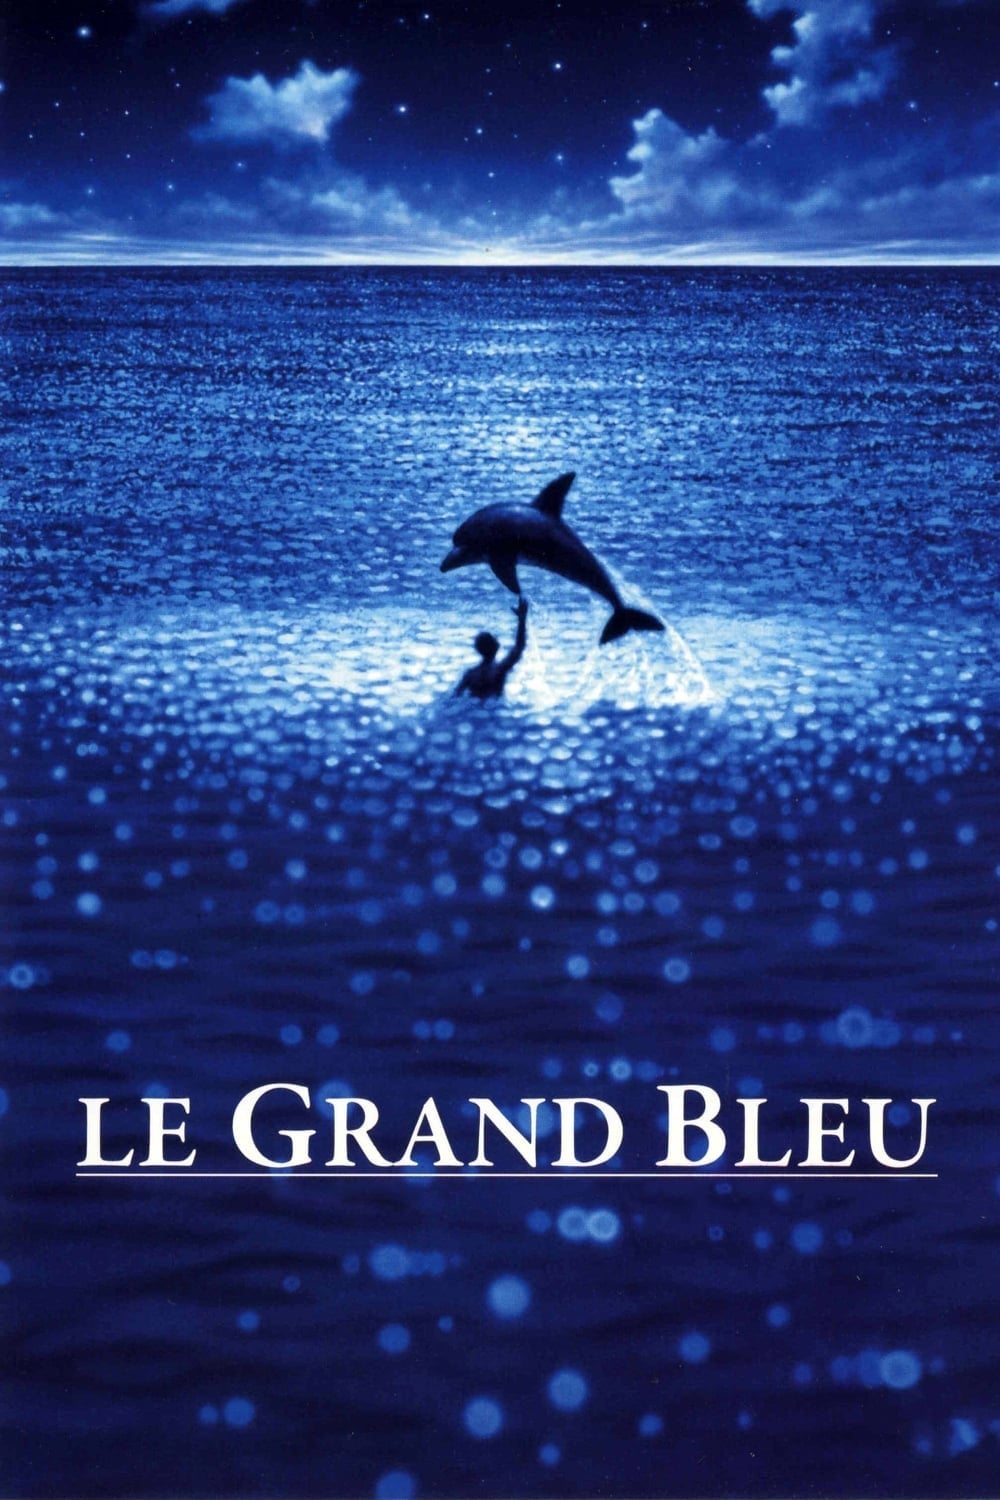 Le Grand Bleu est-il disponible sur Netflix ou autre ?